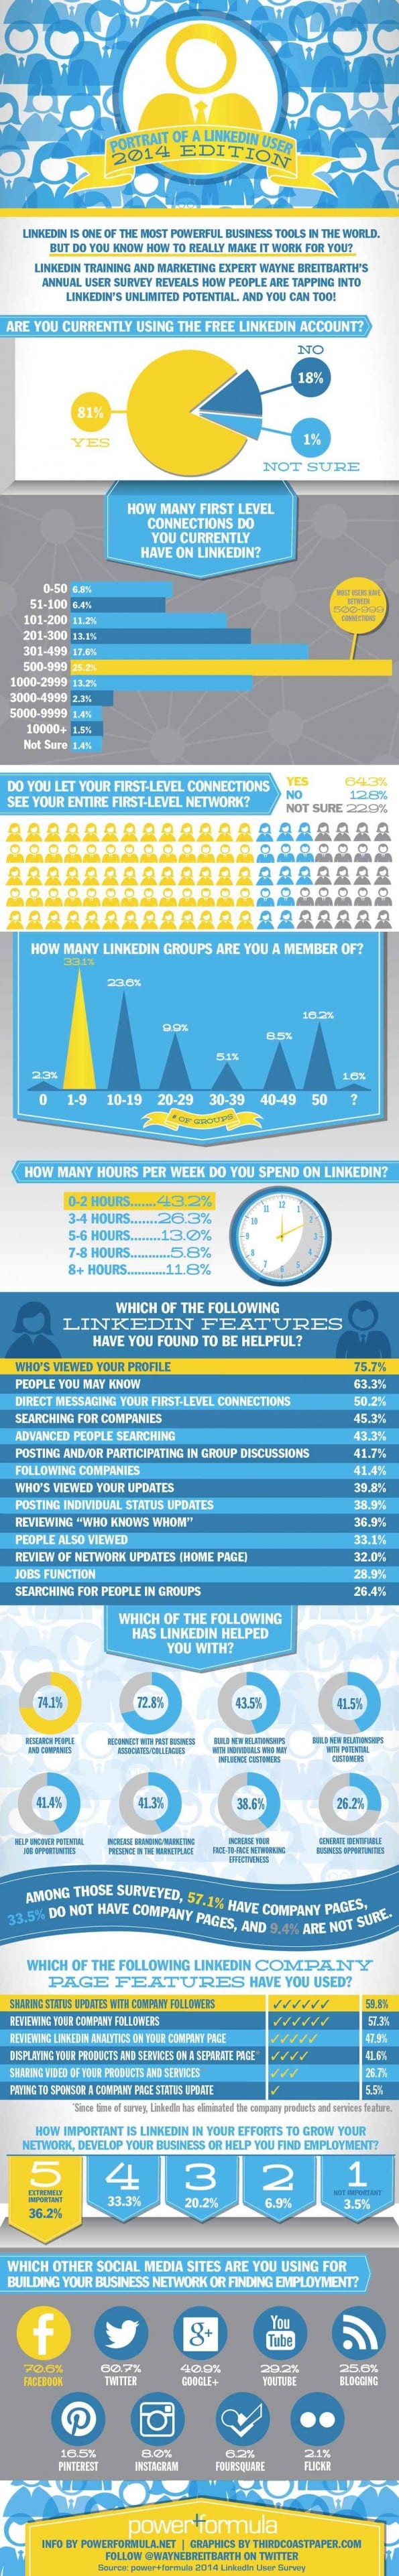 Wie is de LinkedIn-gebruiker anno 2014 [infographic]